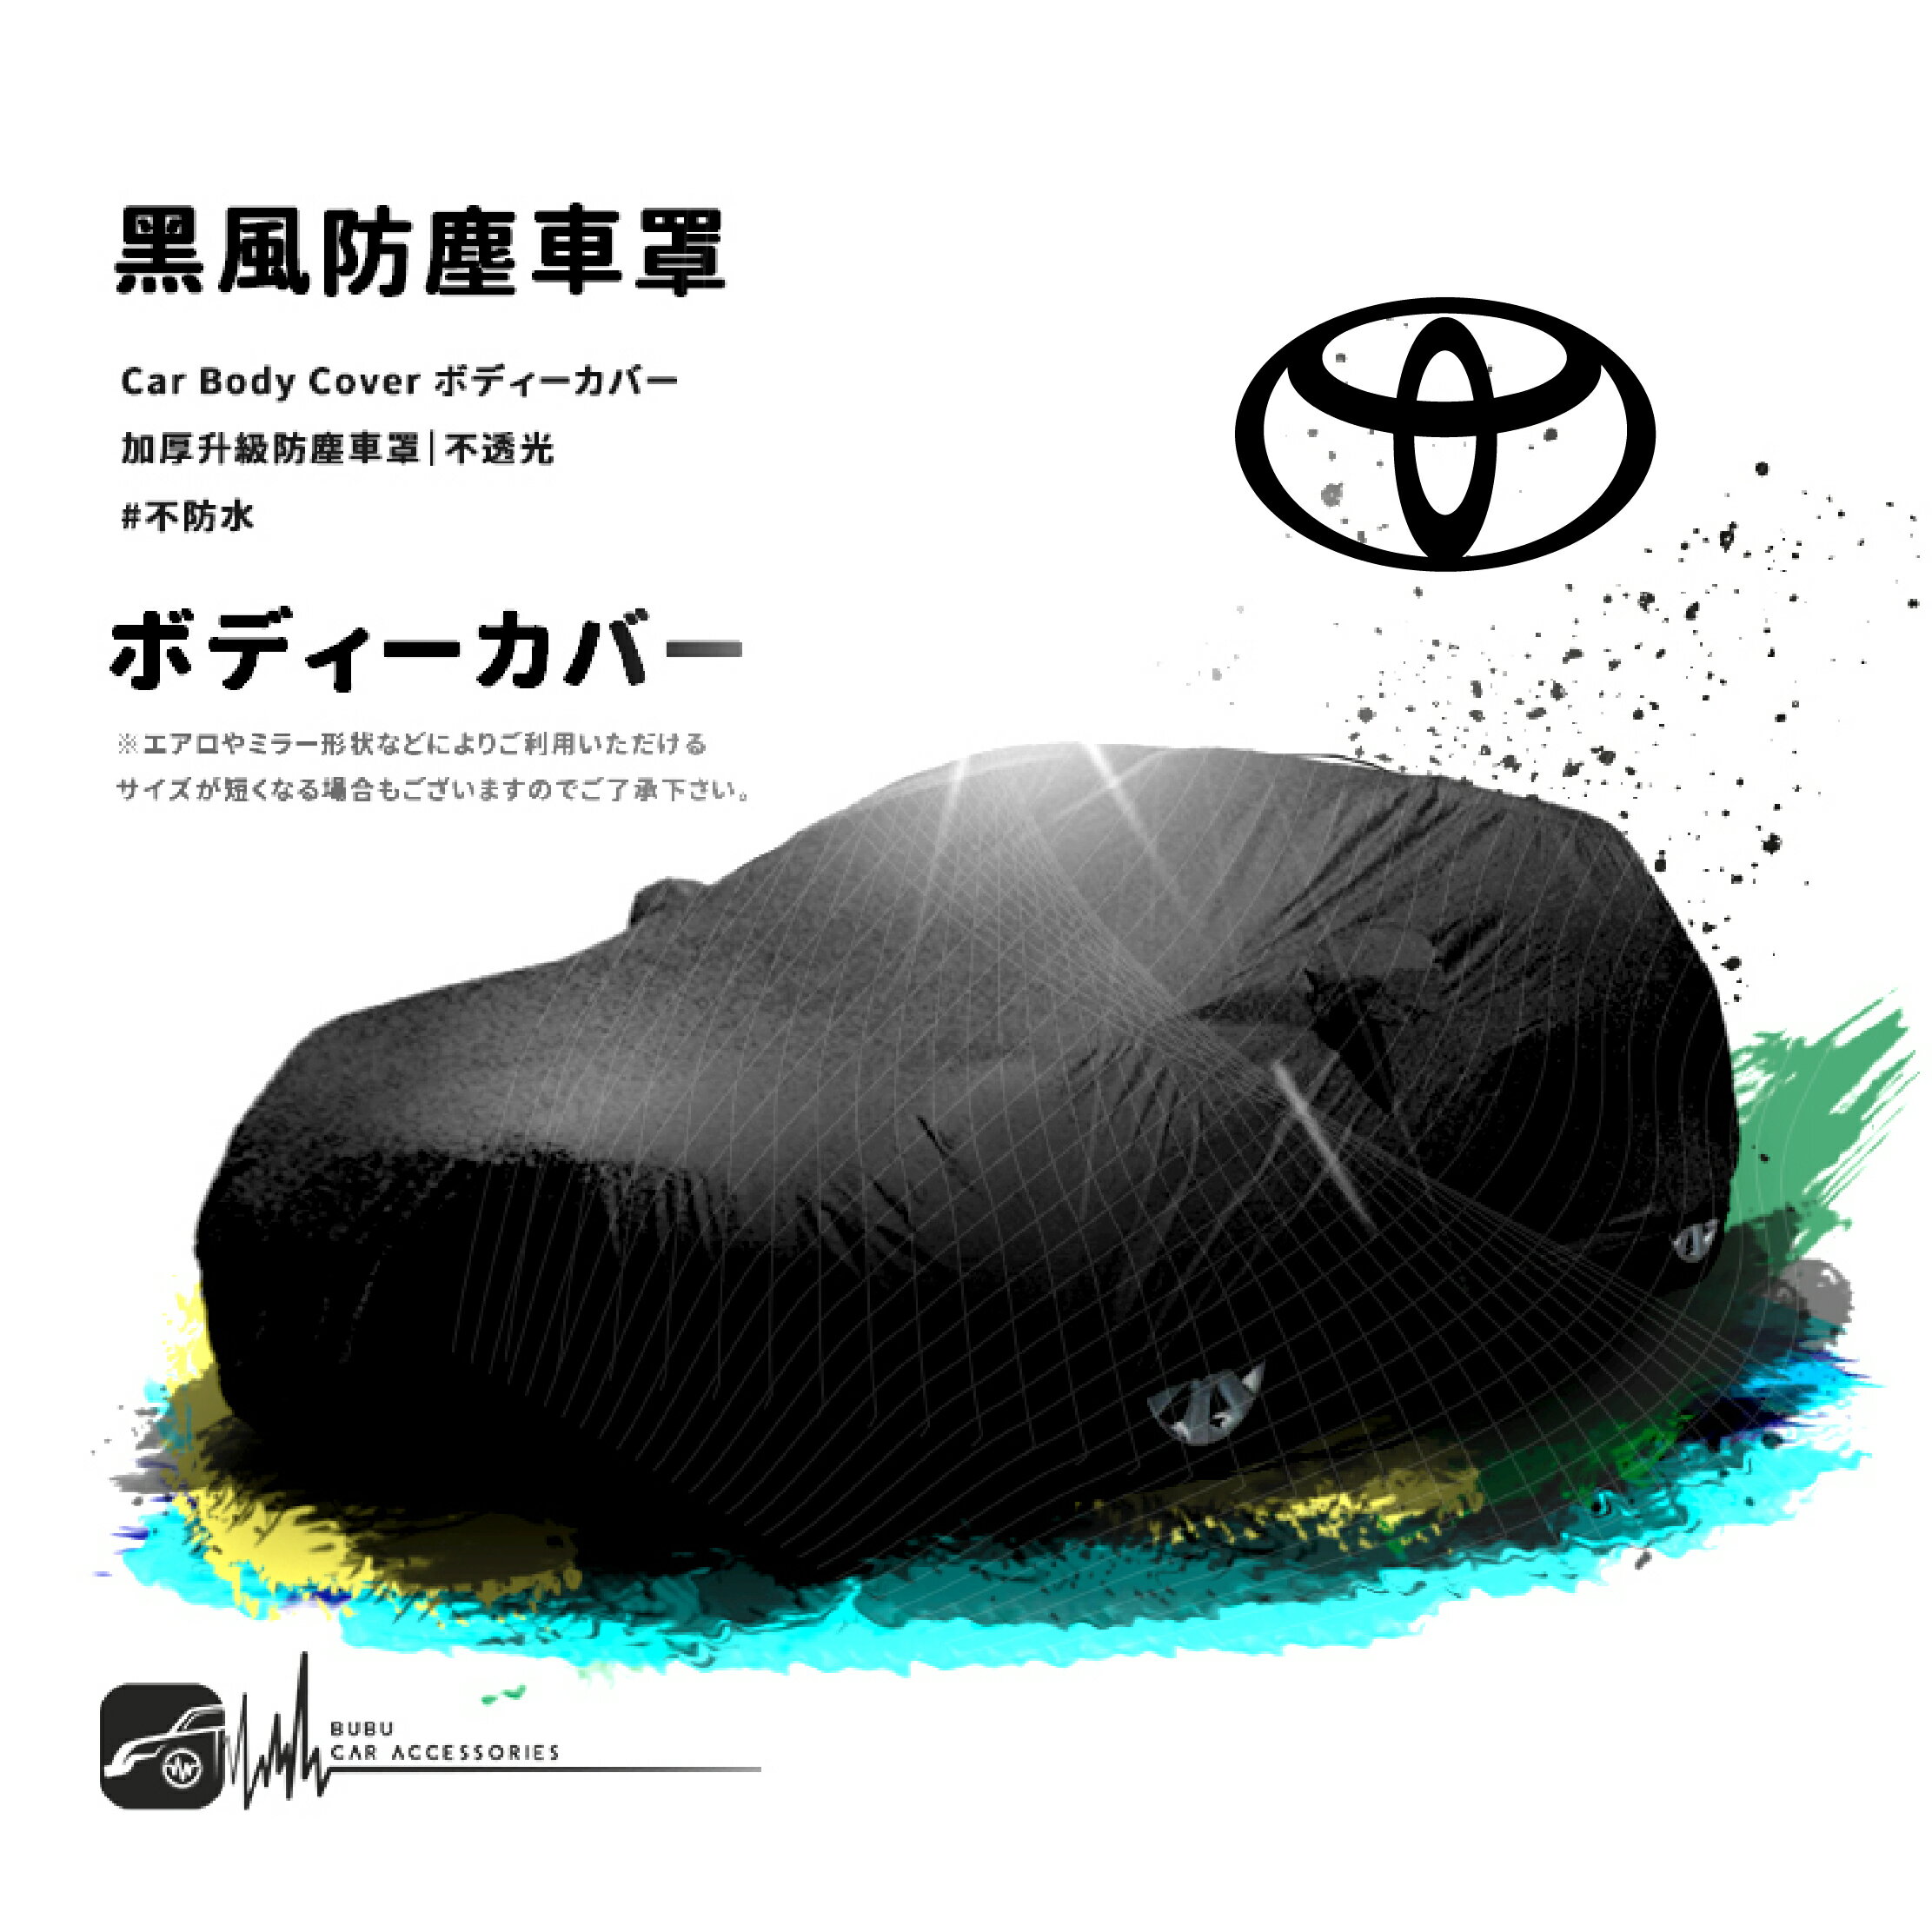 118【防塵黑風車罩】汽車車罩 適用於Toyota 豐田 tercel Vios corolla altis camry